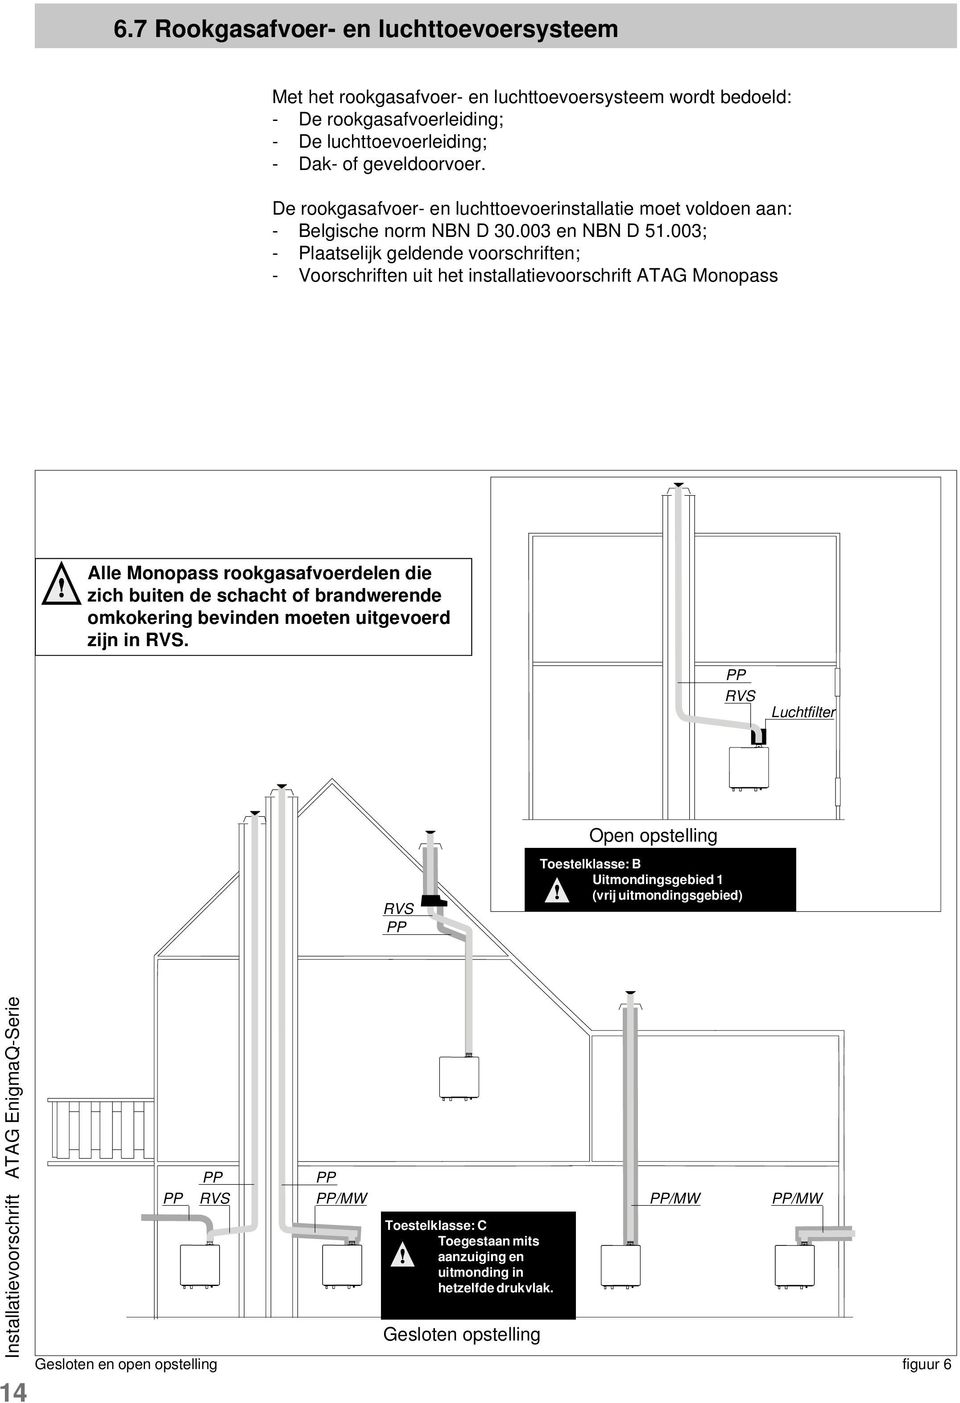 003; - Plaatselijk geldende voorschriften; - Voorschriften uit het installatievoorschrift ATAG Monopass Alle Monopass rookgasafvoerdelen die zich buiten de schacht of brandwerende omkokering